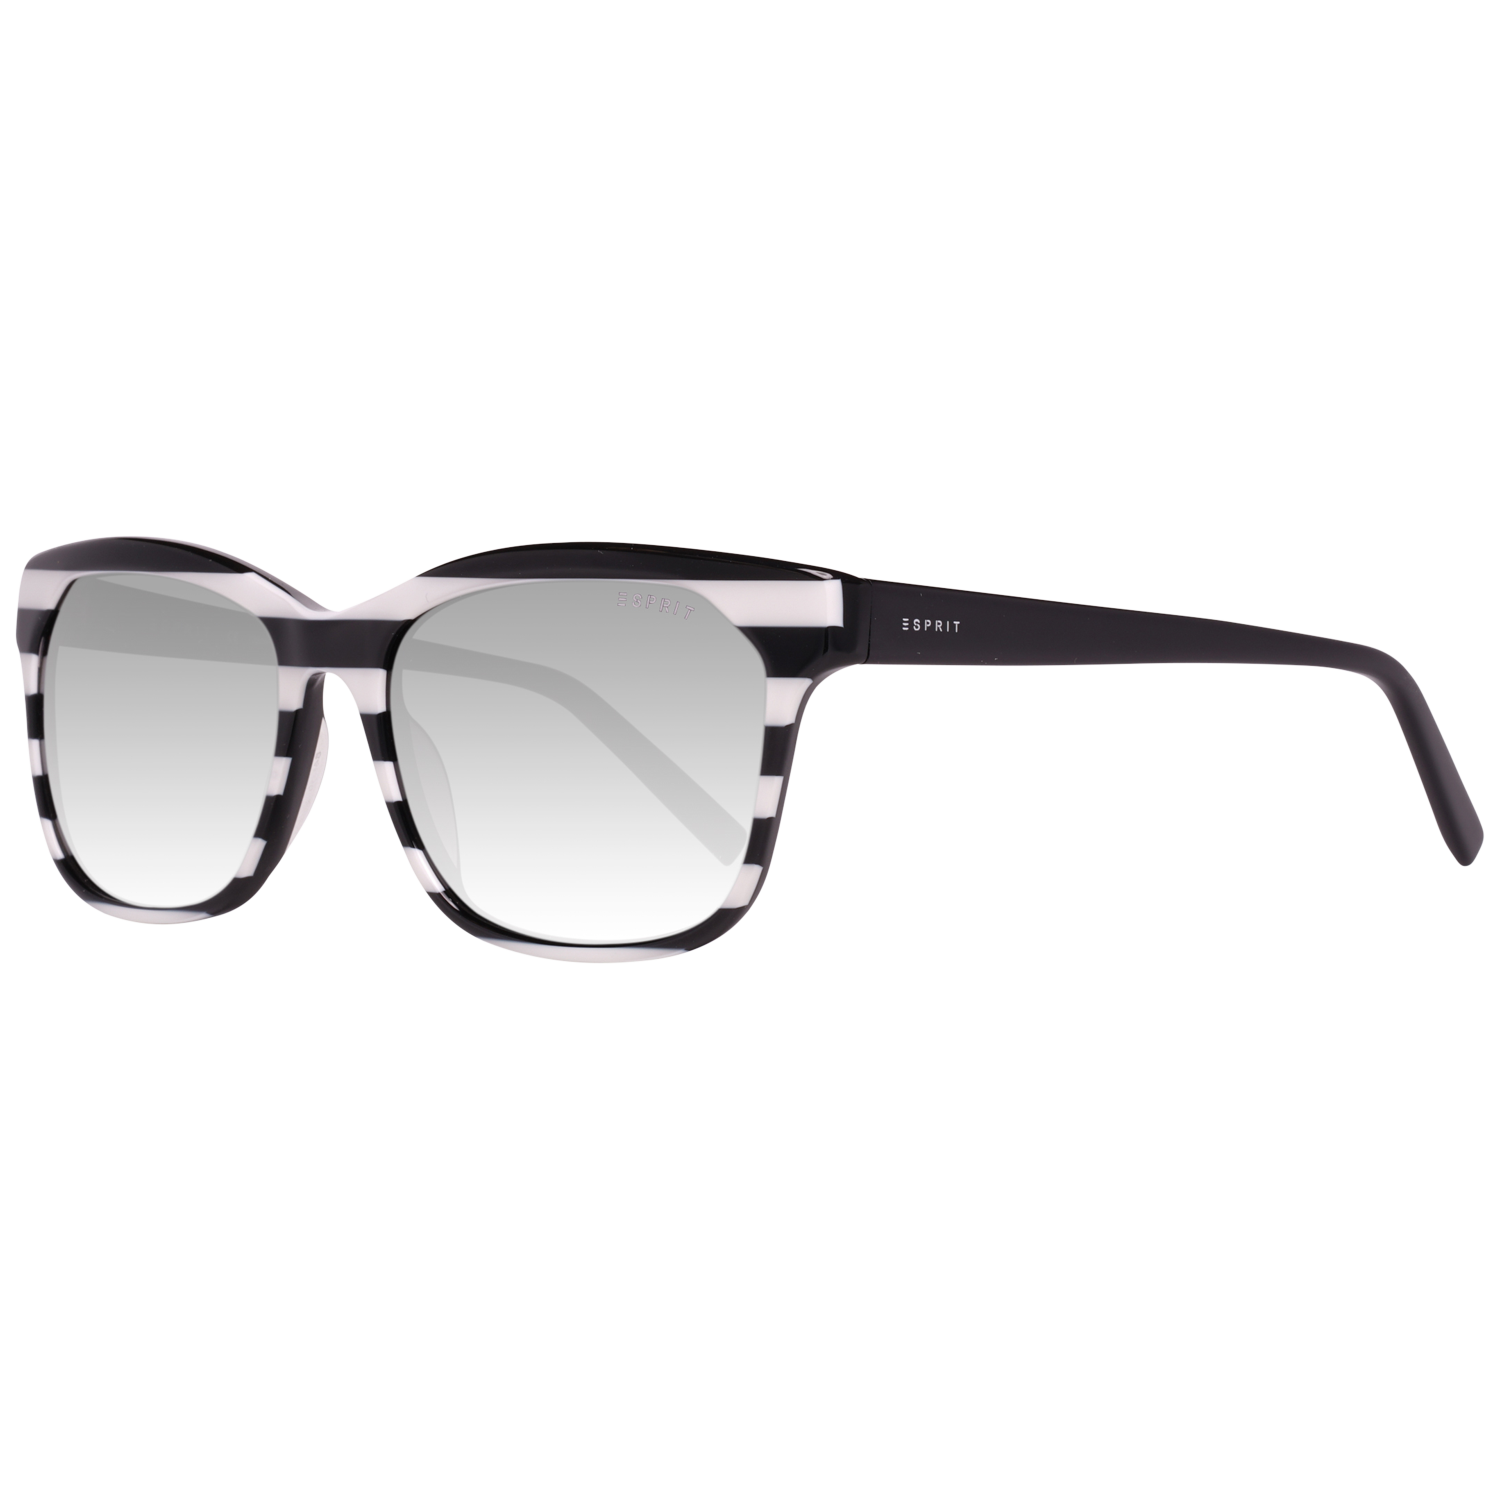 Esprit Sunglasses ET17884 538 54 Black